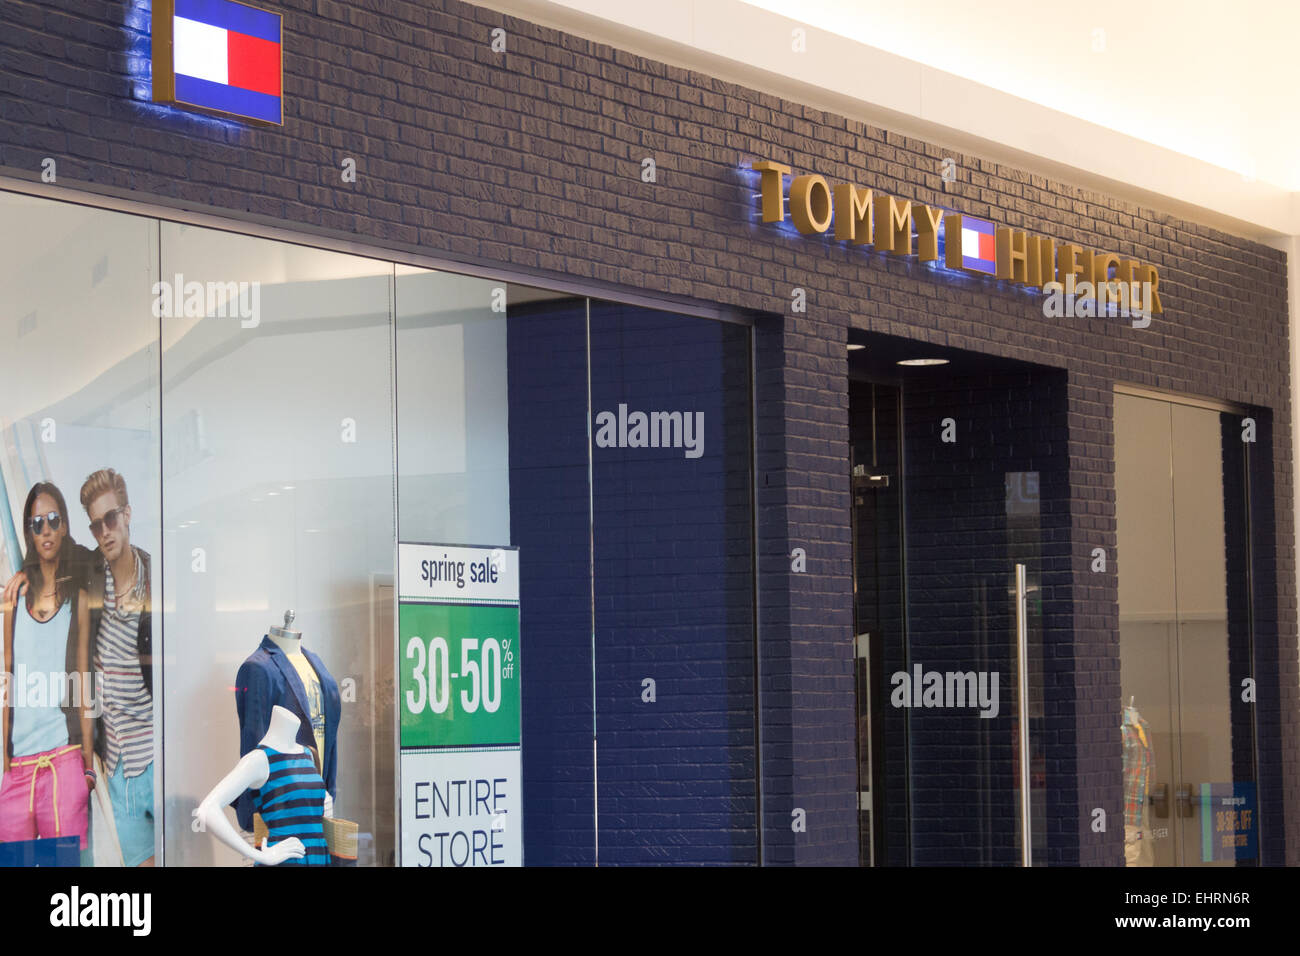 Tommy hilfiger outlet store -Fotos und -Bildmaterial in hoher Auflösung –  Alamy